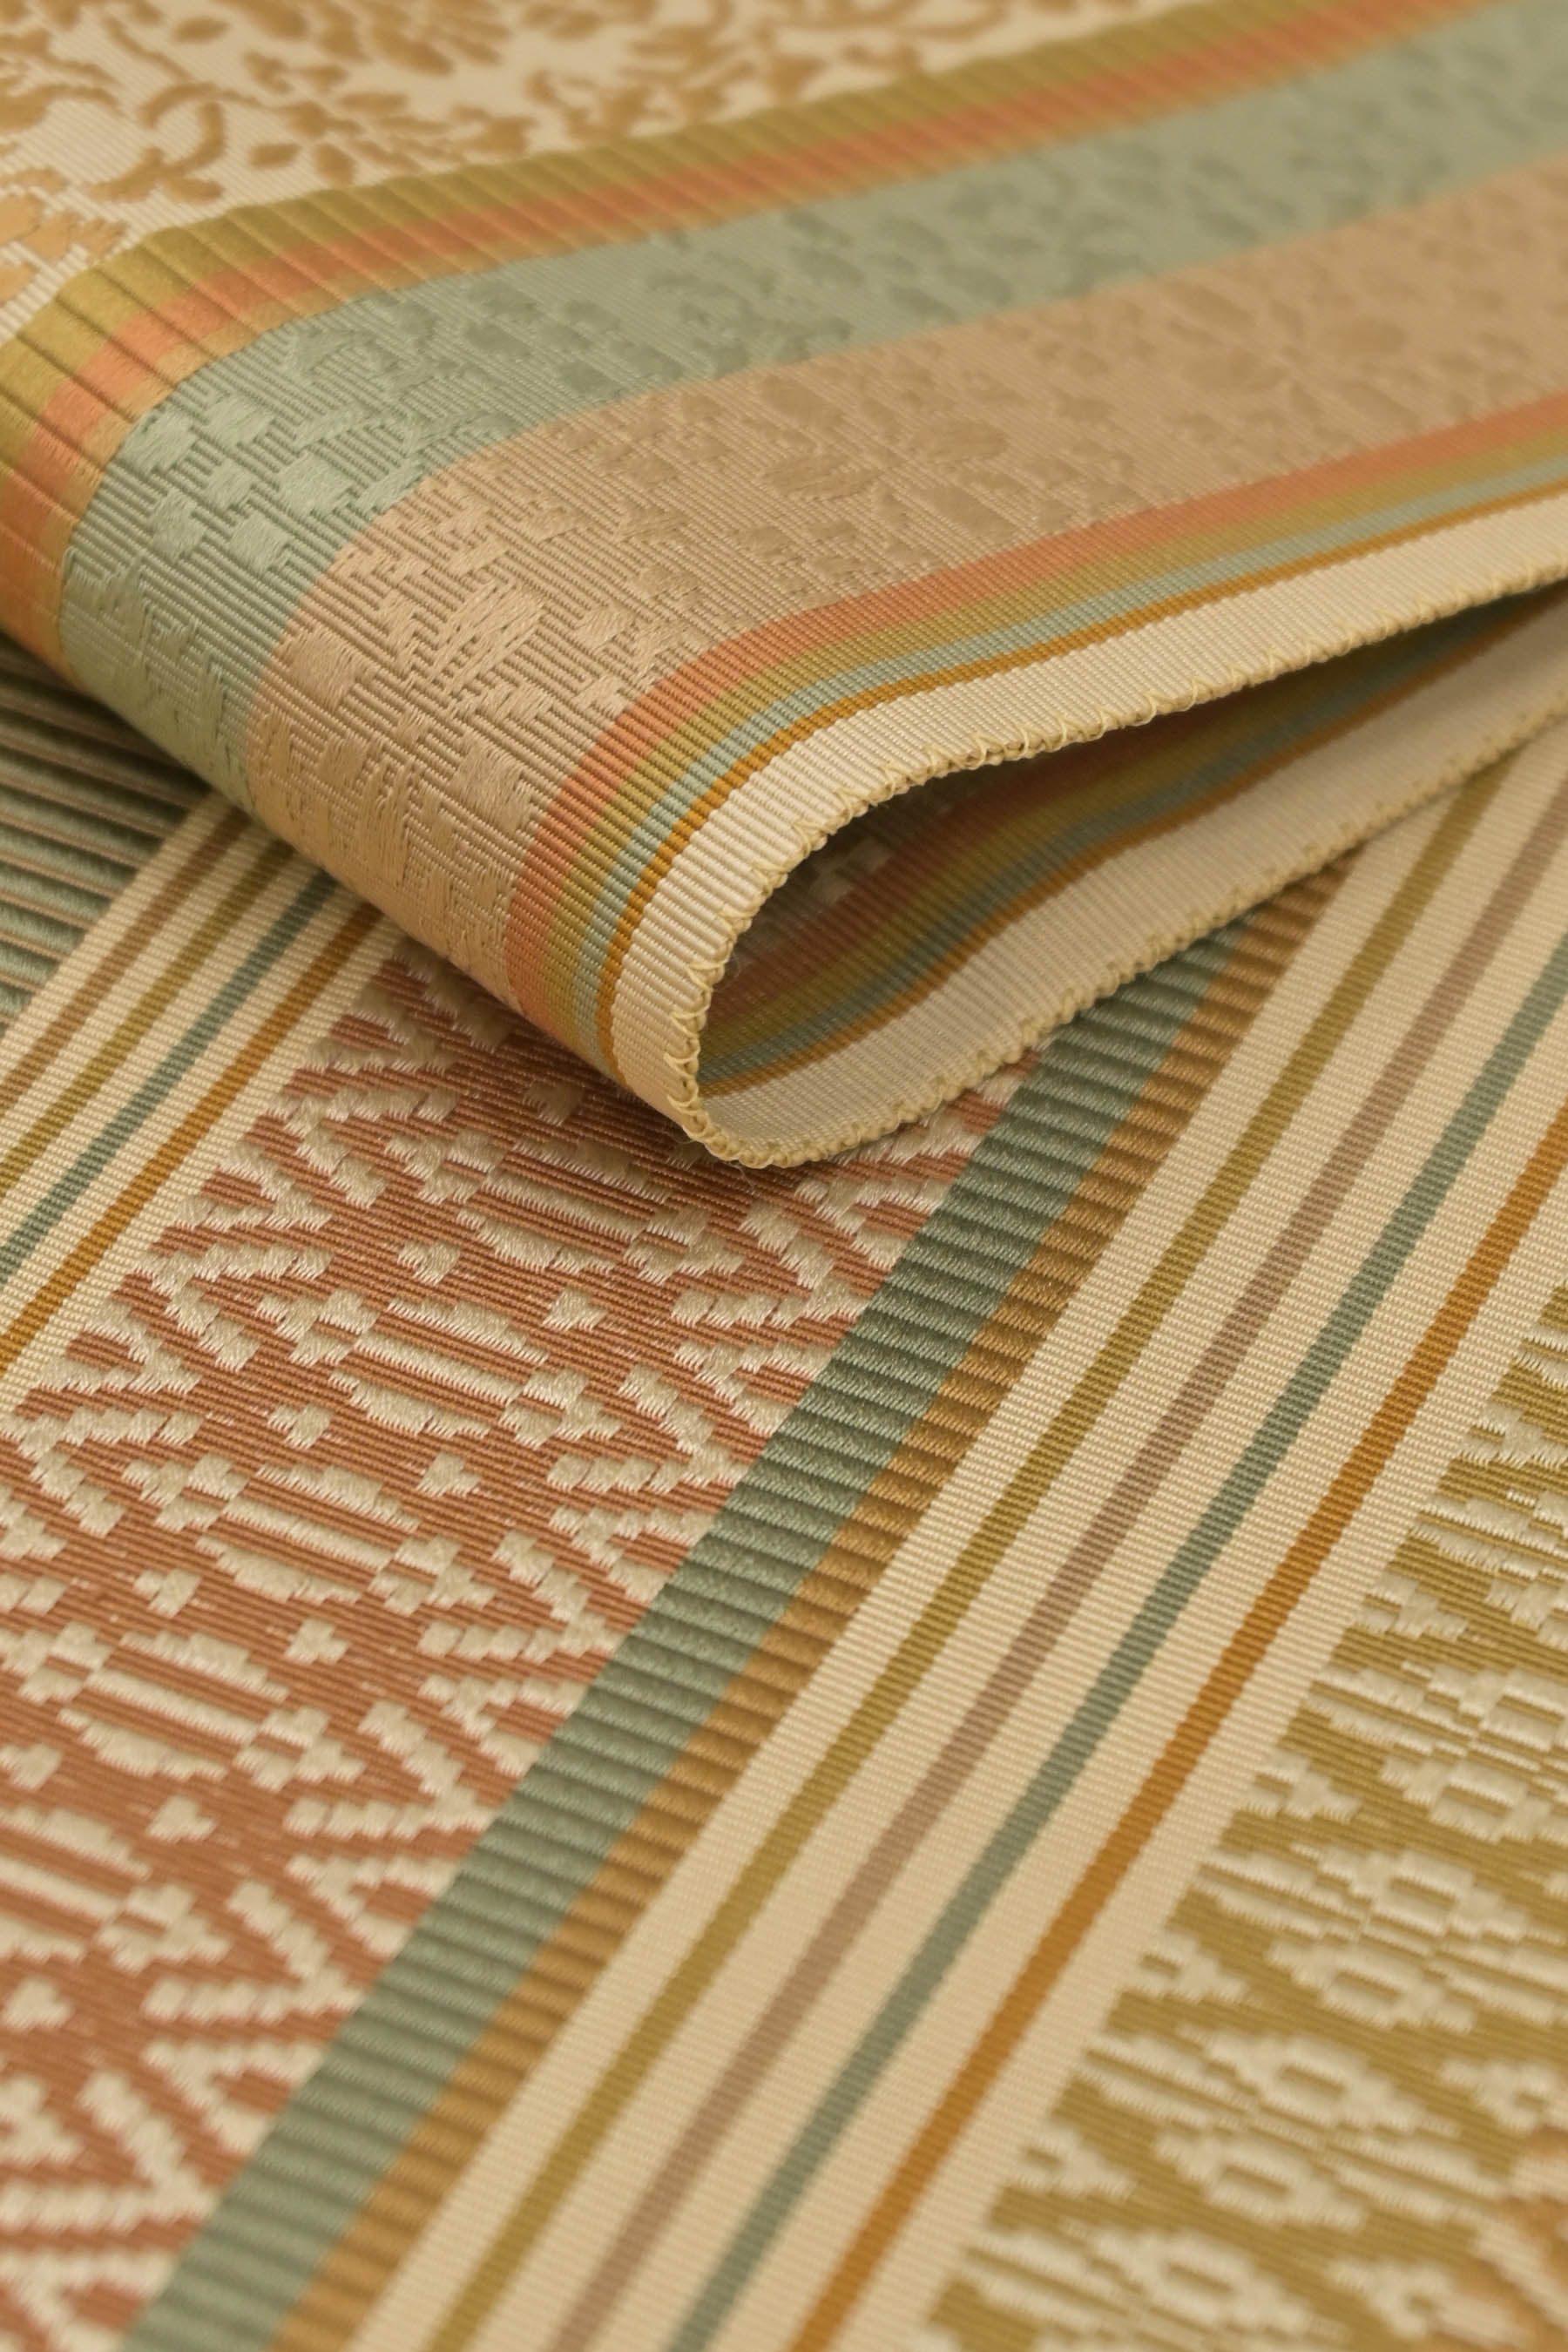 手織り唐織の袋帯です。 ふっくら手織りの素材感抜群です。 草木染め 撥水加工済み